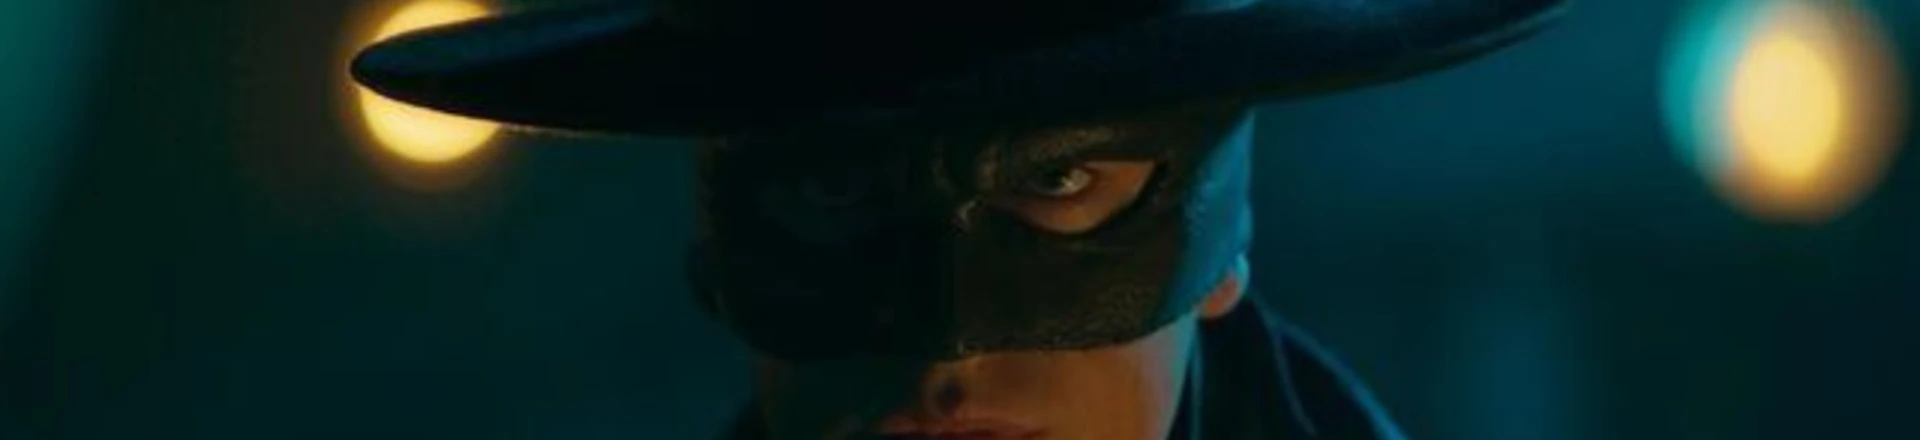 Zorro volta com nova série no Prime Video